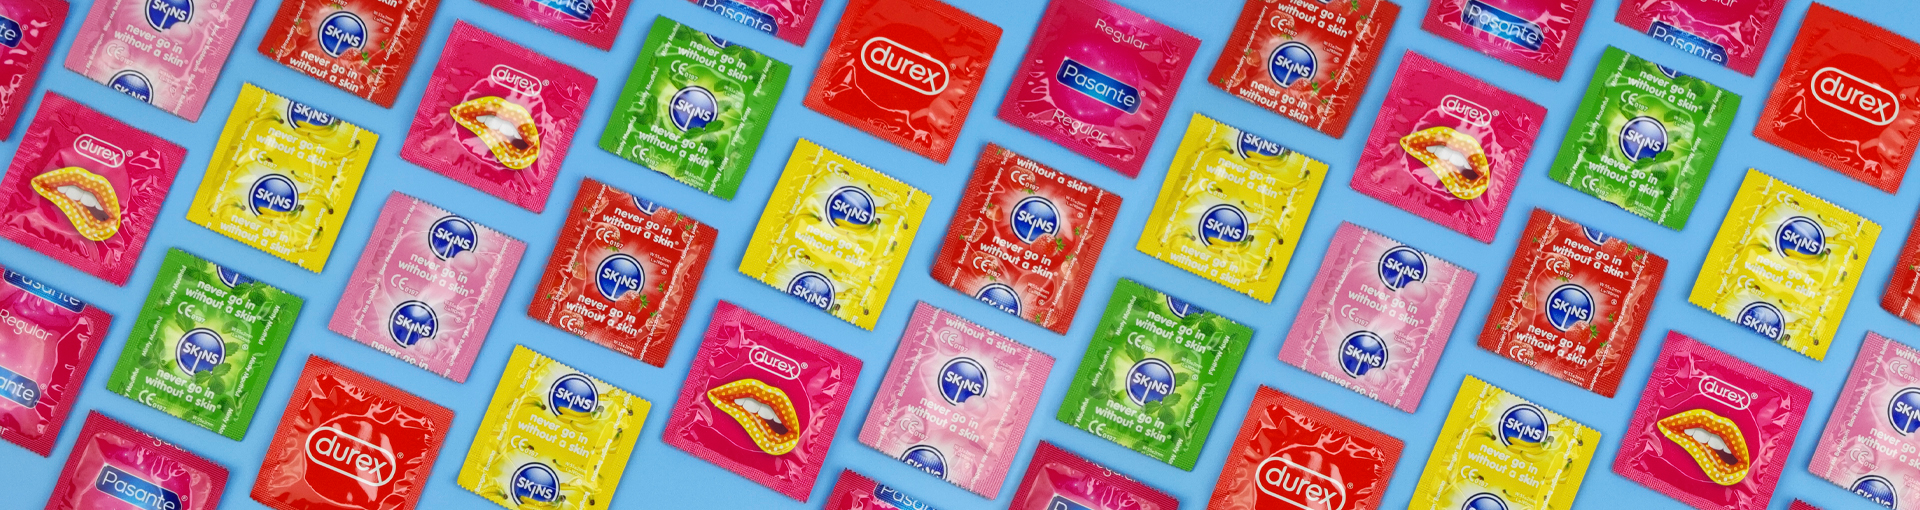 Preservativos, todo lo que necesitas en Papaya XL. ¡Entrega discreta!